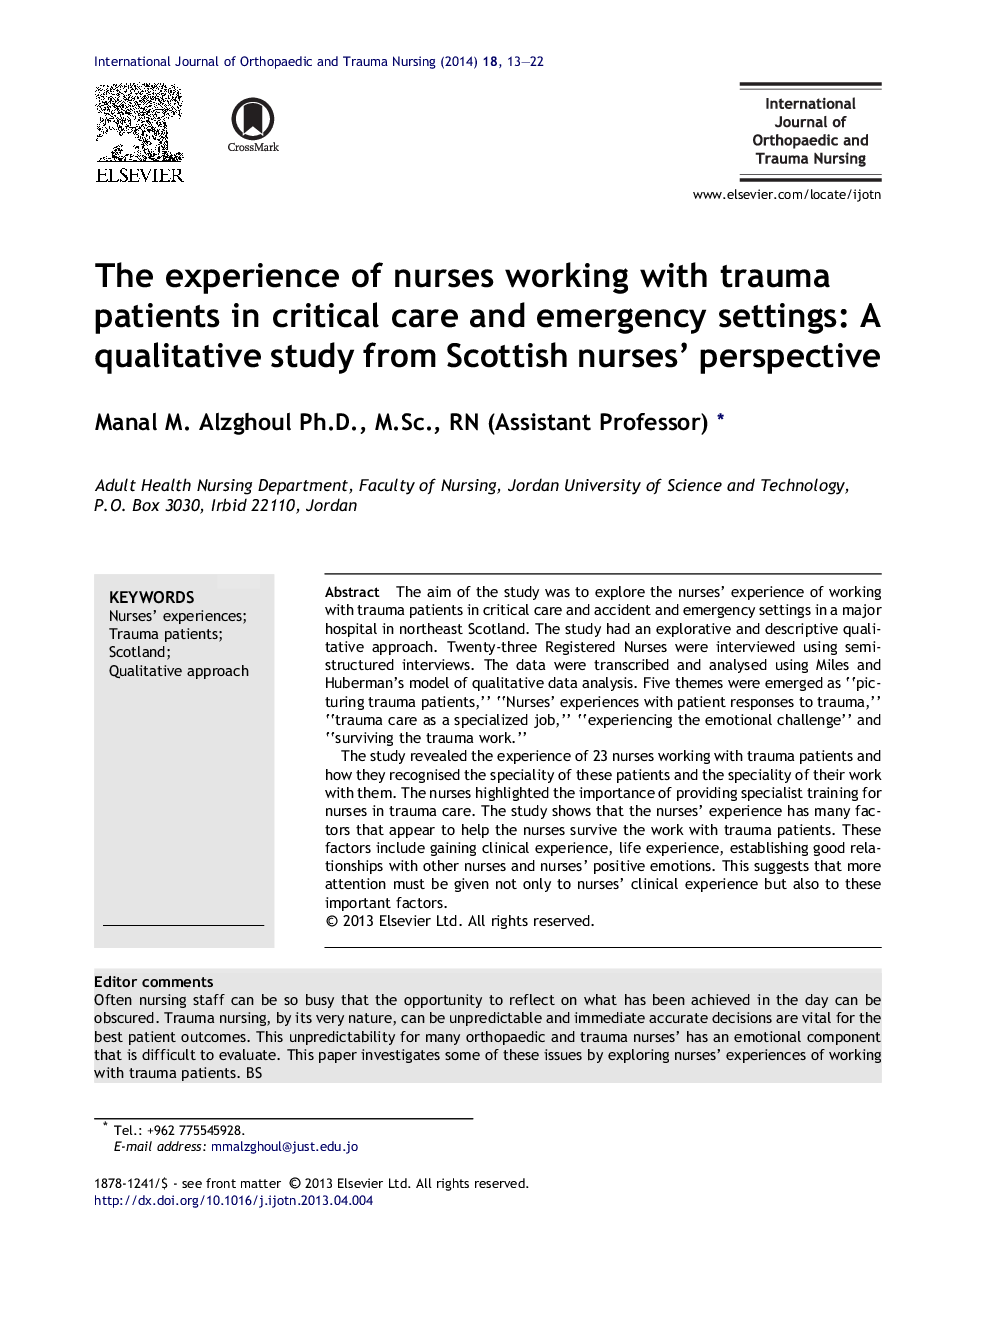 تجربه پرستاران از بیماران مبتلا به تروما در مراقبت های ویژه و مراکز اورژانس: یک مطالعه کیفی از منظر پرستاران اسکاتلندی